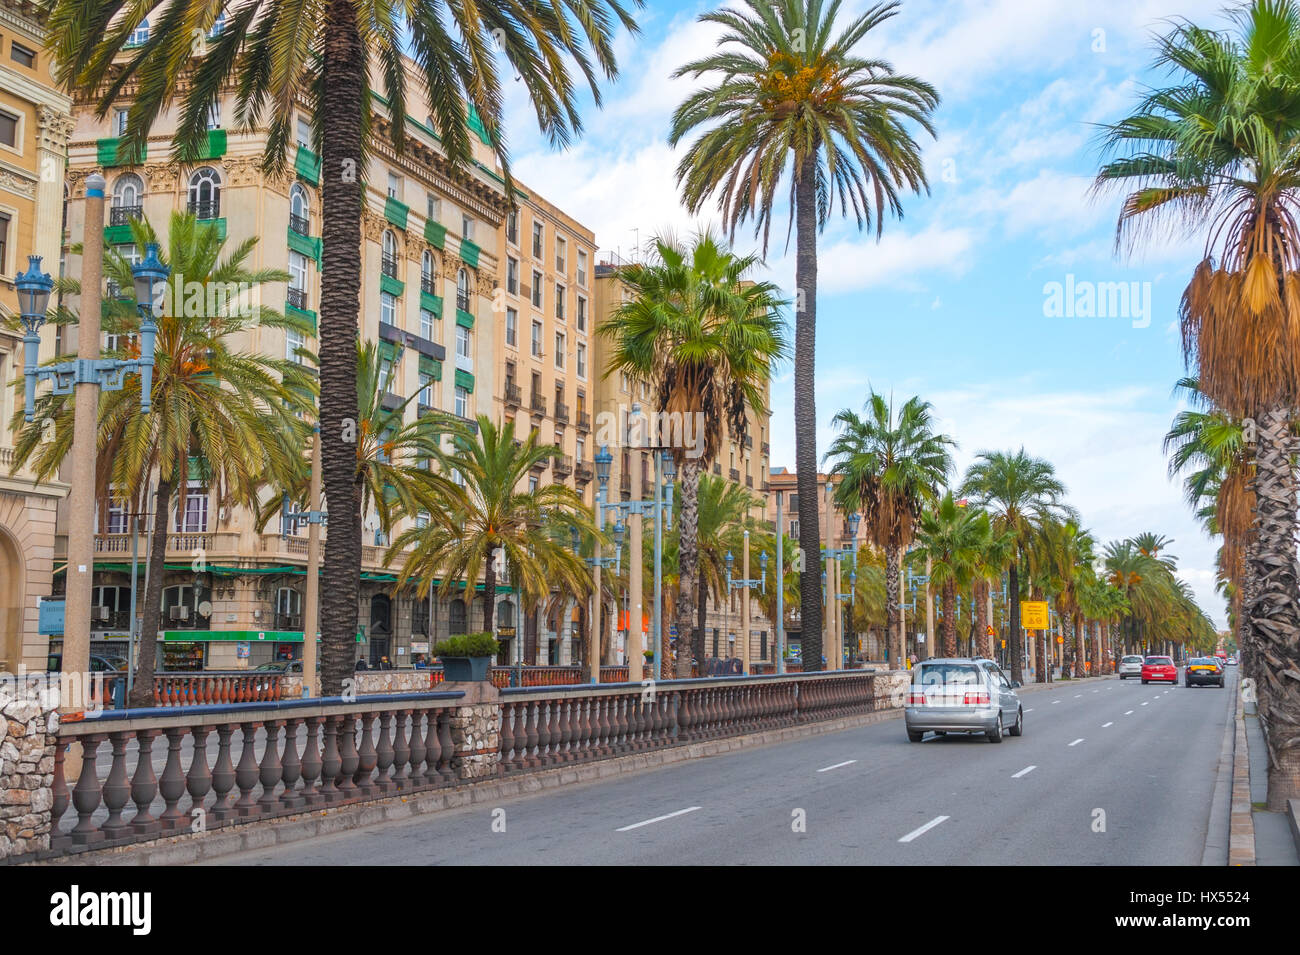 Voitures dans la rue, la fin de l'après-midi à Barcelone. Rue bordée de palmiers avec vacances & condo buildings aux gens de se rencontrer dans un café à l'autre côté de la rue. Banque D'Images